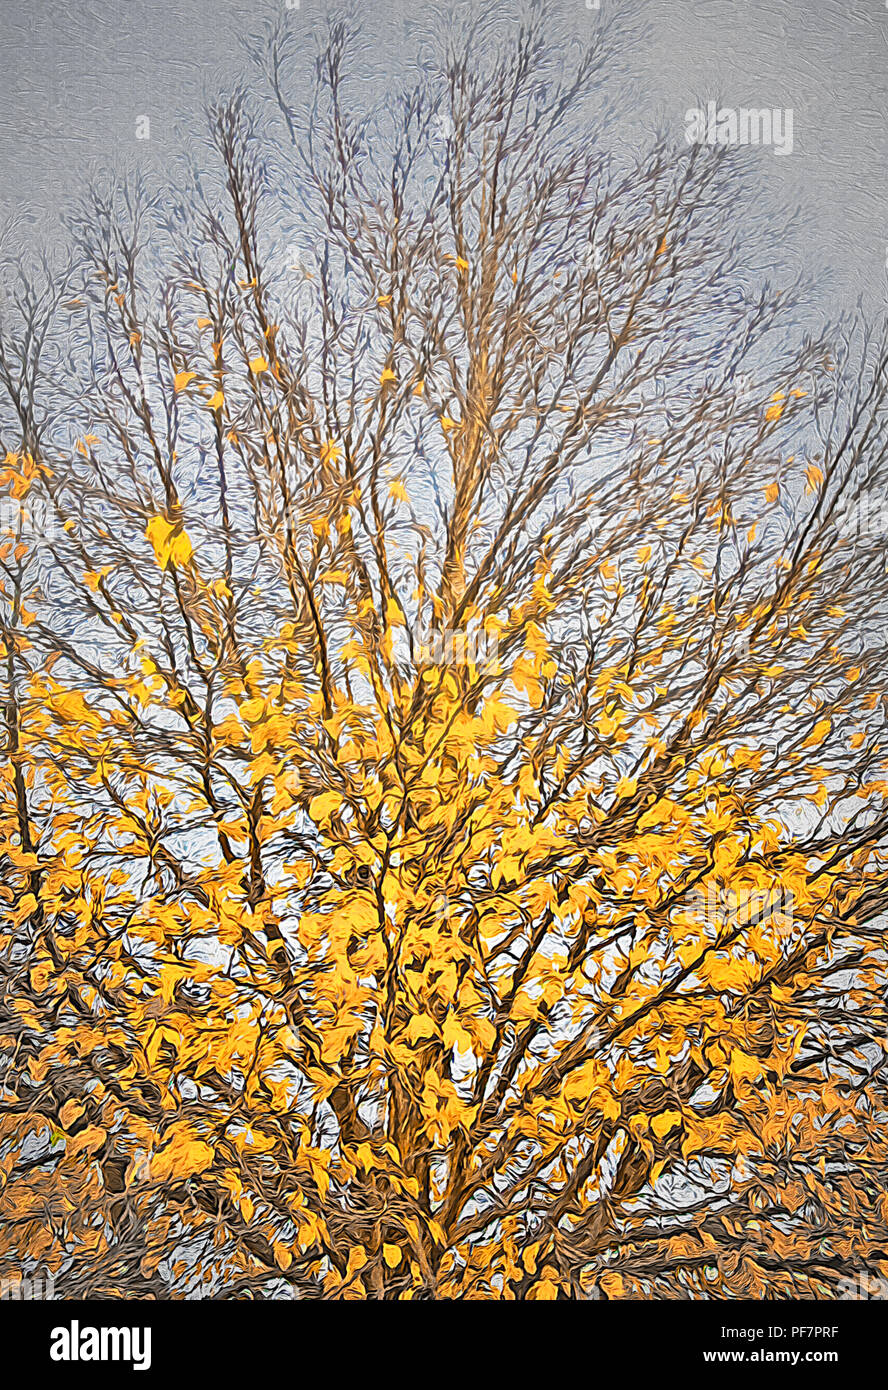 La mia stagione preferita è l'autunno. Un giorno ho speso del tempo per la guida in città, catturando più alberi e angoli di quegli alberi in blazing Autunno a colori. Questo Foto Stock